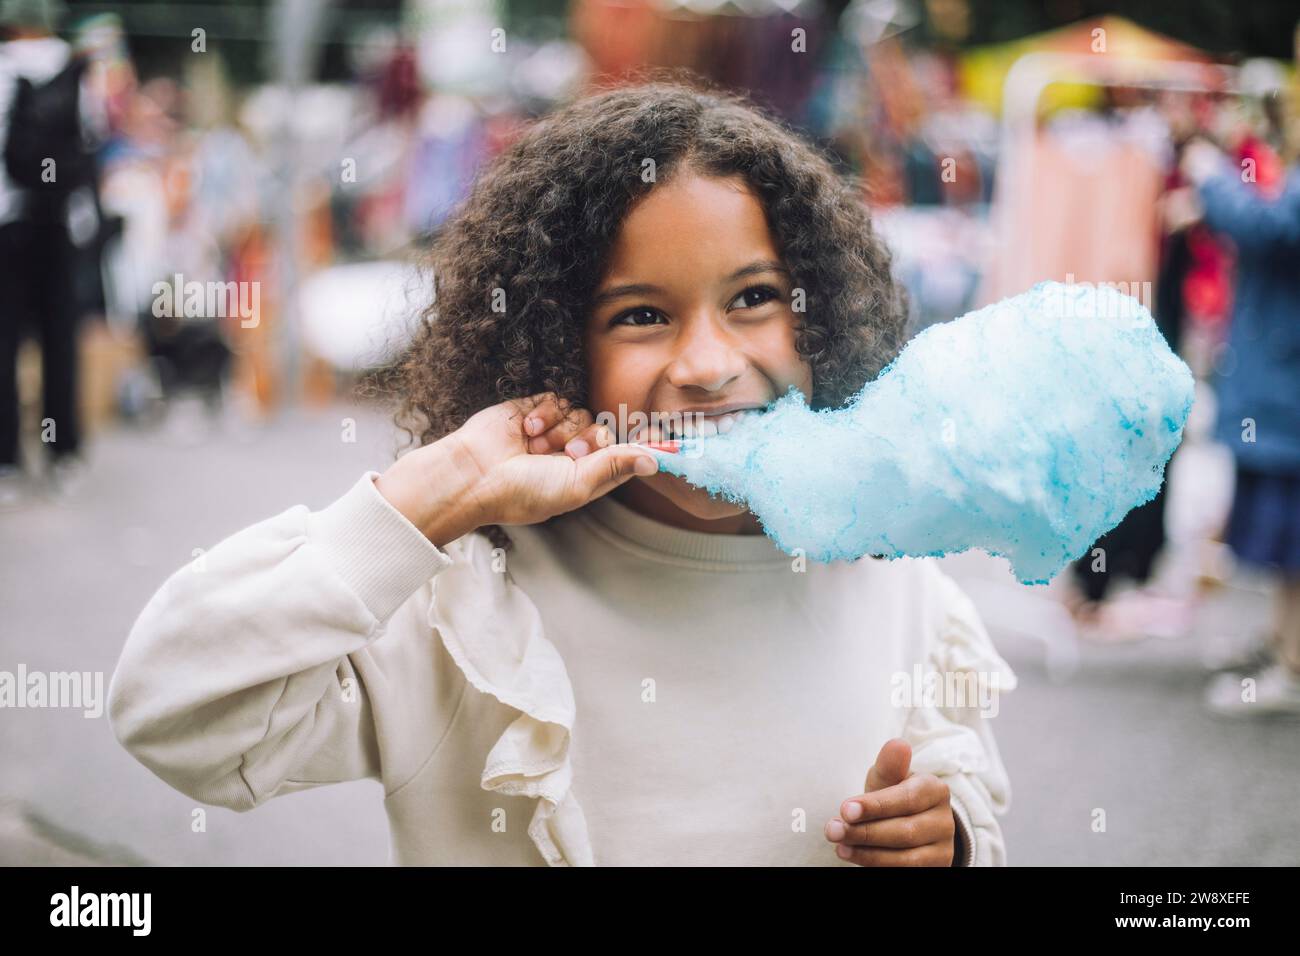 Ein nachdenkliches Mädchen isst blaue Zuckerwatte im Vergnügungspark Stockfoto